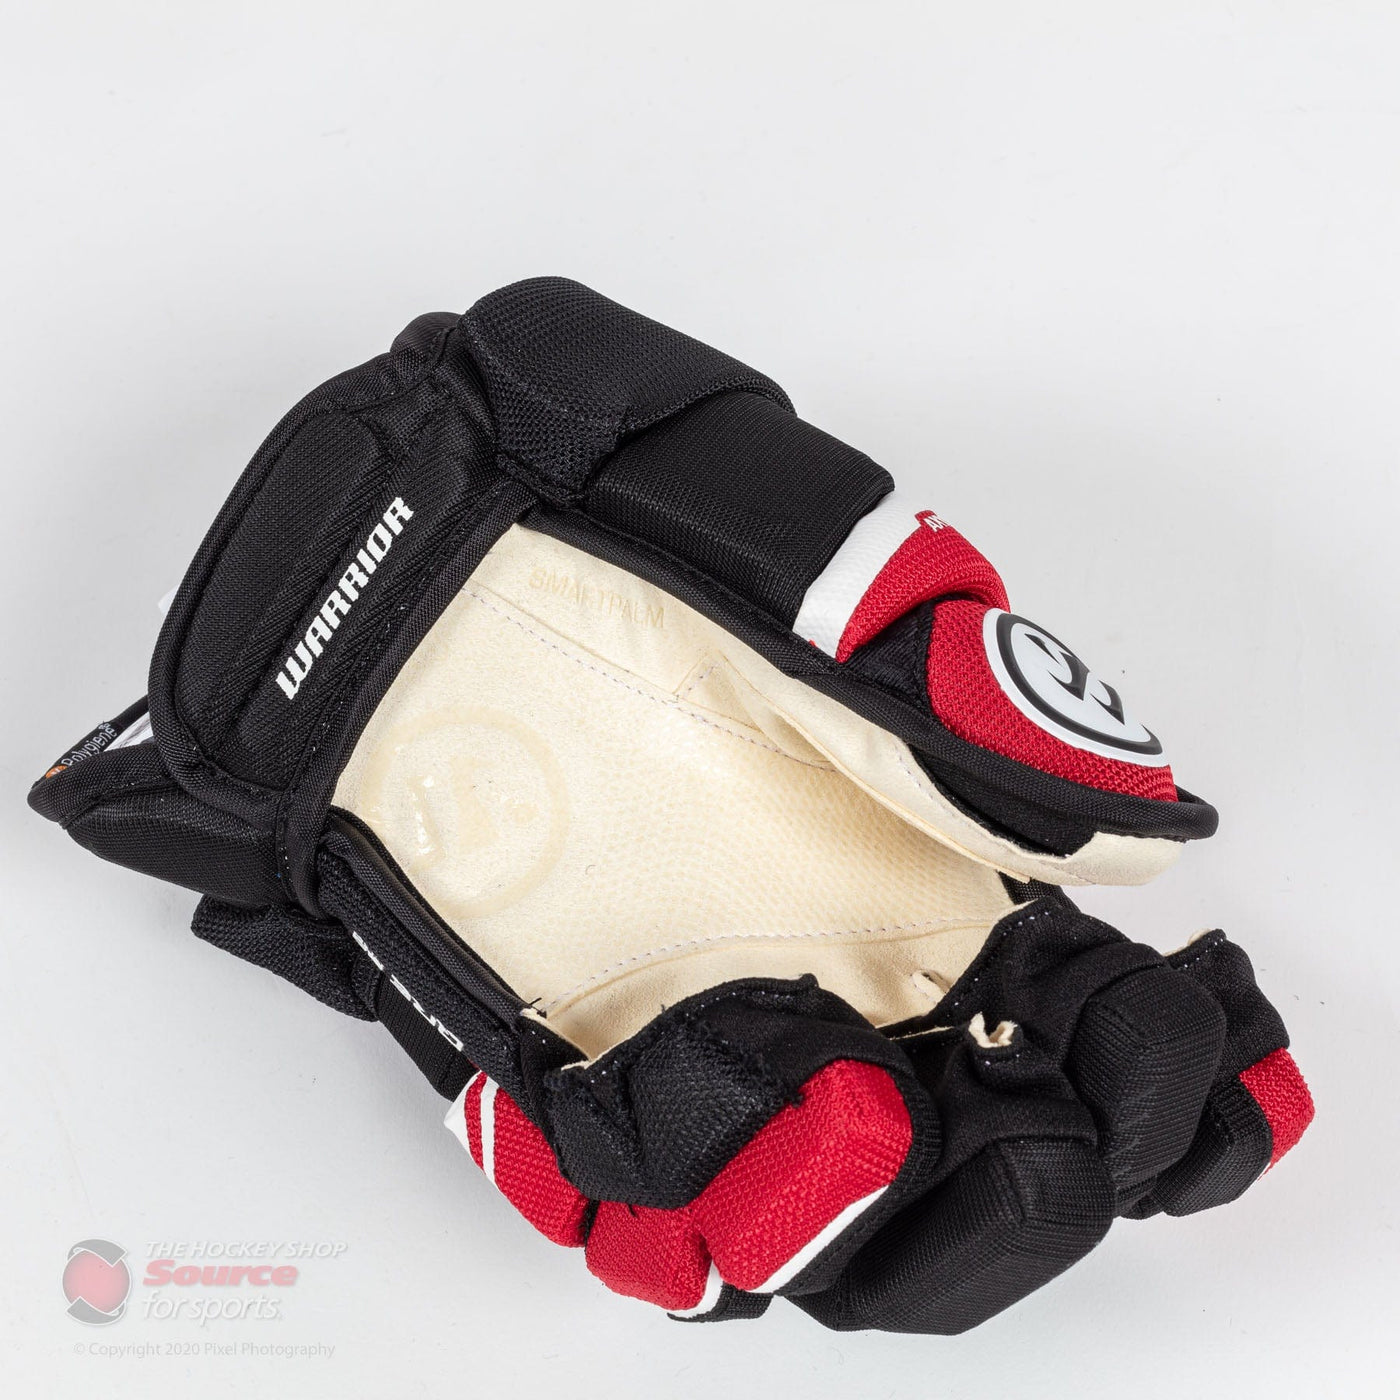 Warrior Covert QRE 20 Pro Junior Hockey Gloves